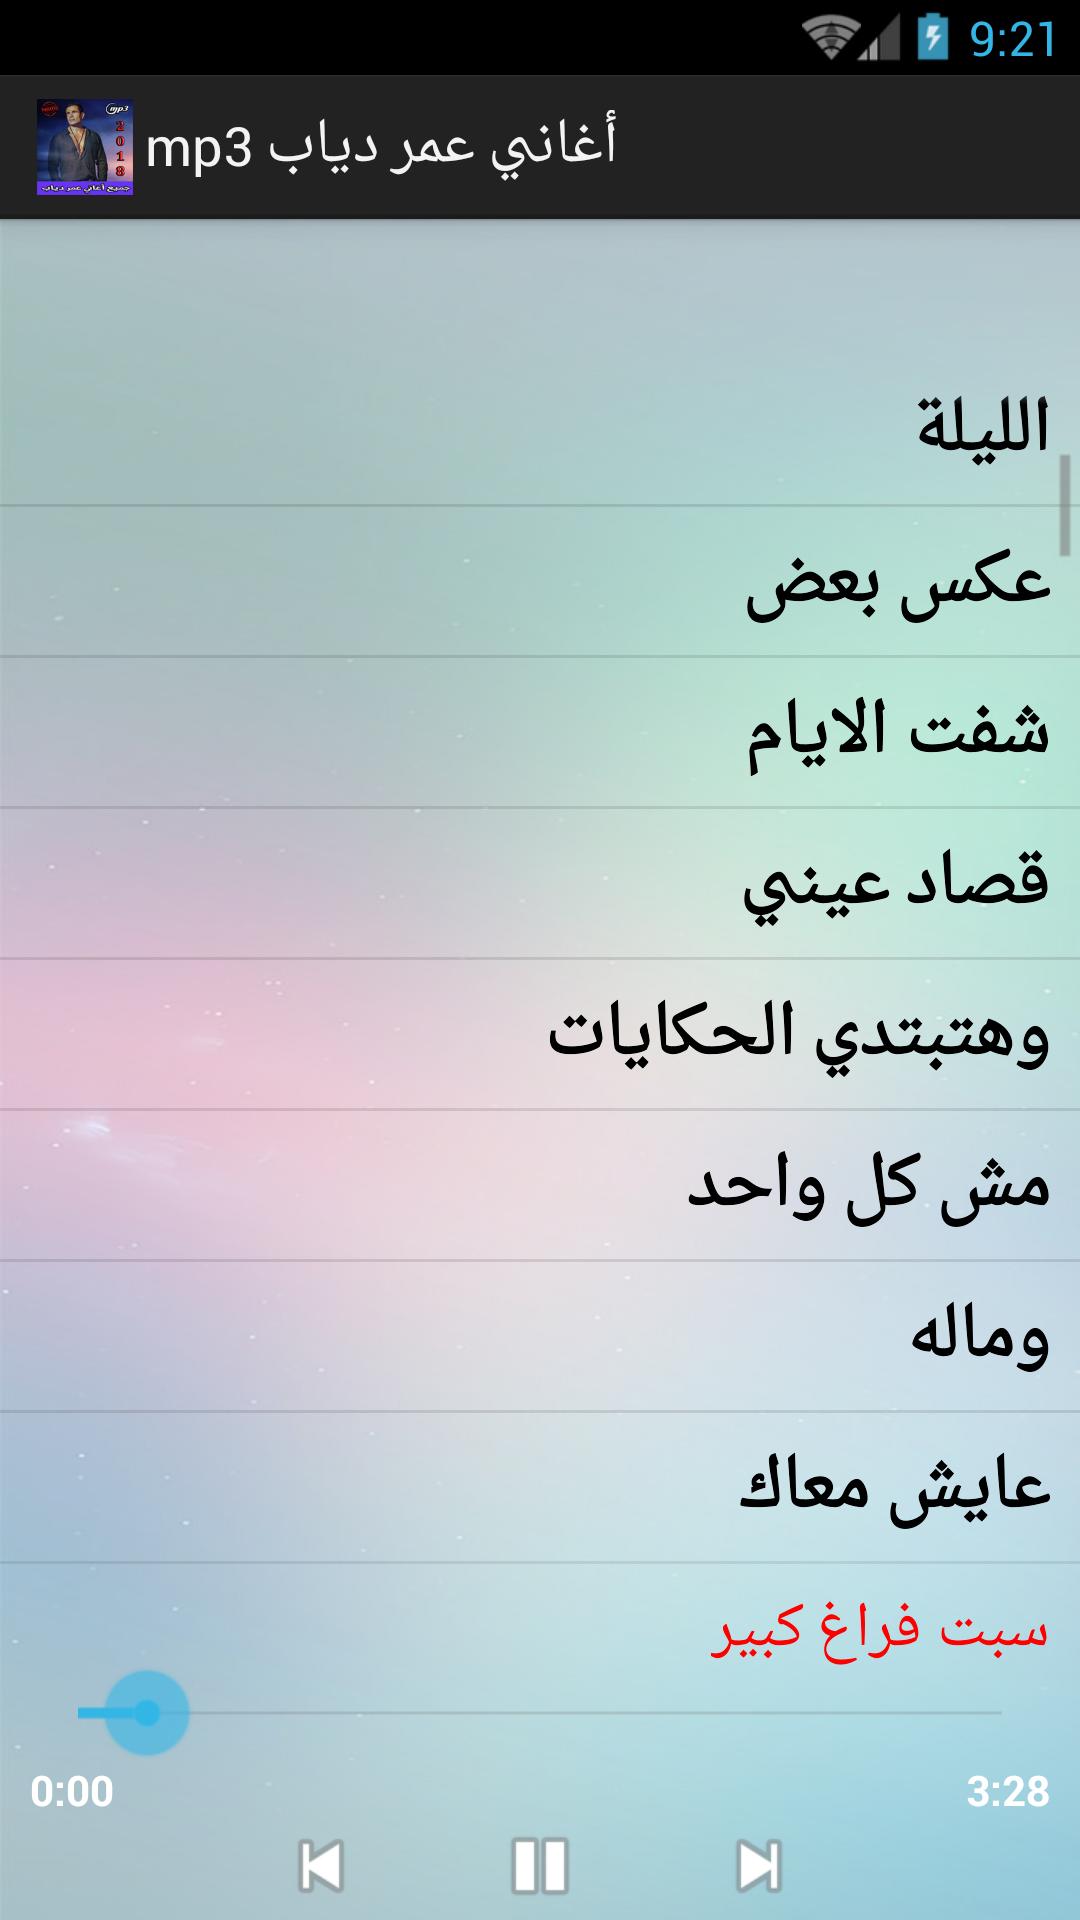 أغاني عمرو دياب mp3 for Android - APK Download